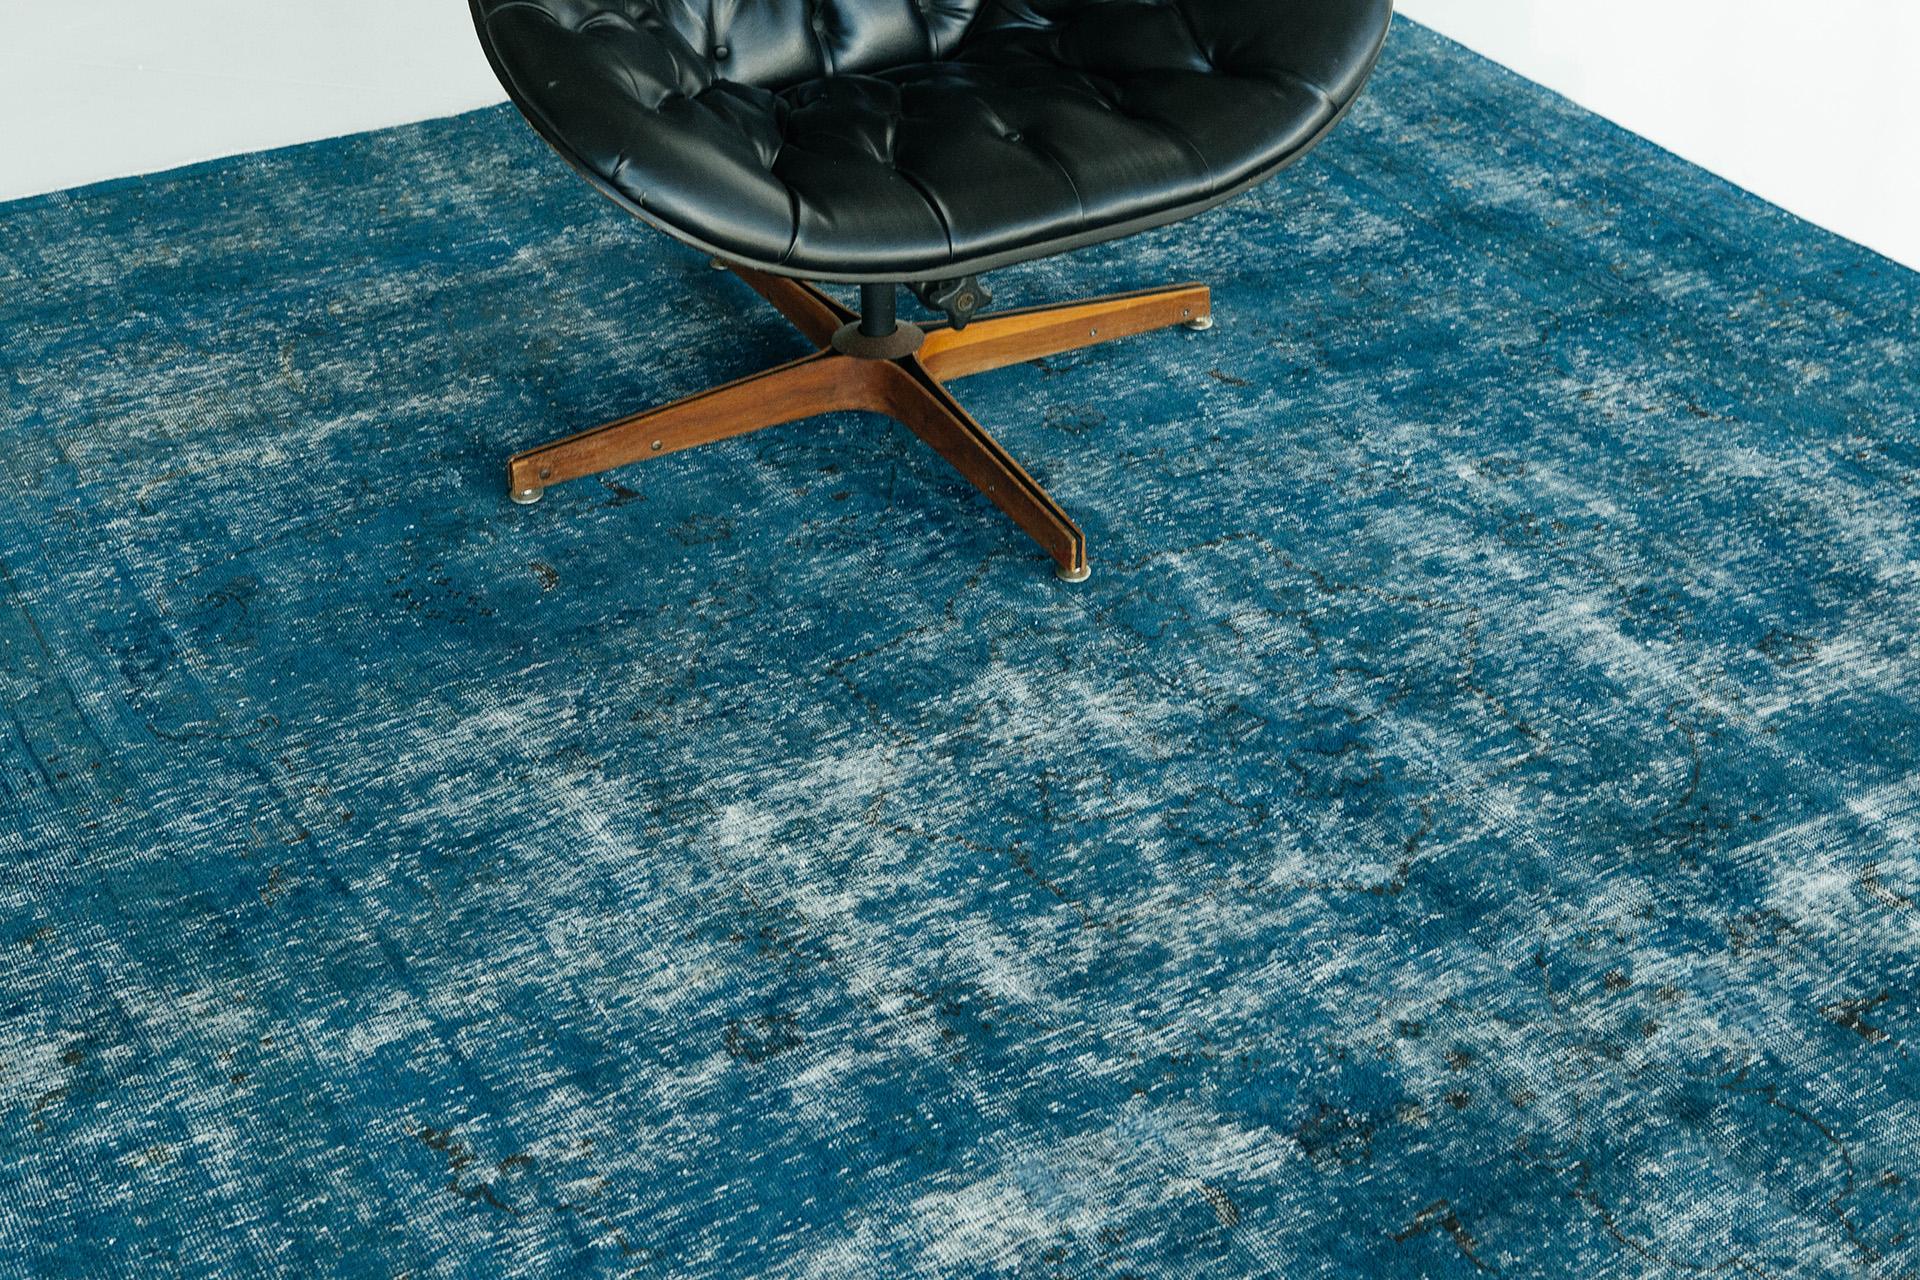 Un tapis de style vintage magnifiquement surteint, profondément saturé dans un ton bleu royal envoûtant. Ce tapis polyvalent ajoutera une touche royale et un attrait extraordinaire à votre espace. Des intérieurs contemporains ou modernes aux